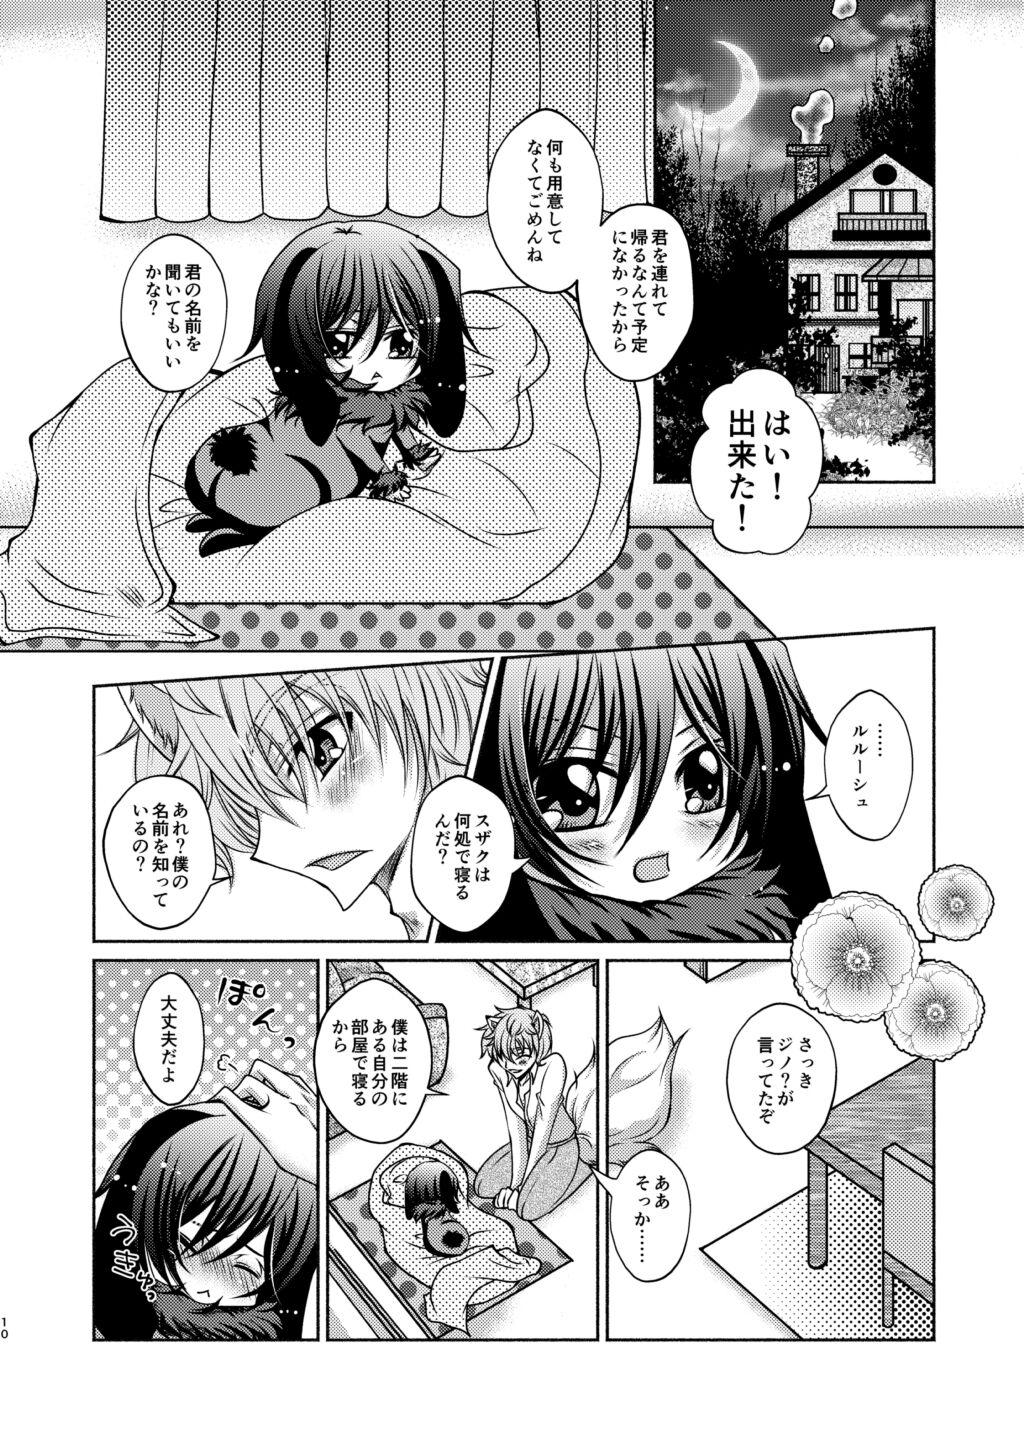 Banging Ookami Suzaku X Kuro Usagi Lelouch Tsume - Code geass Chacal - Page 8